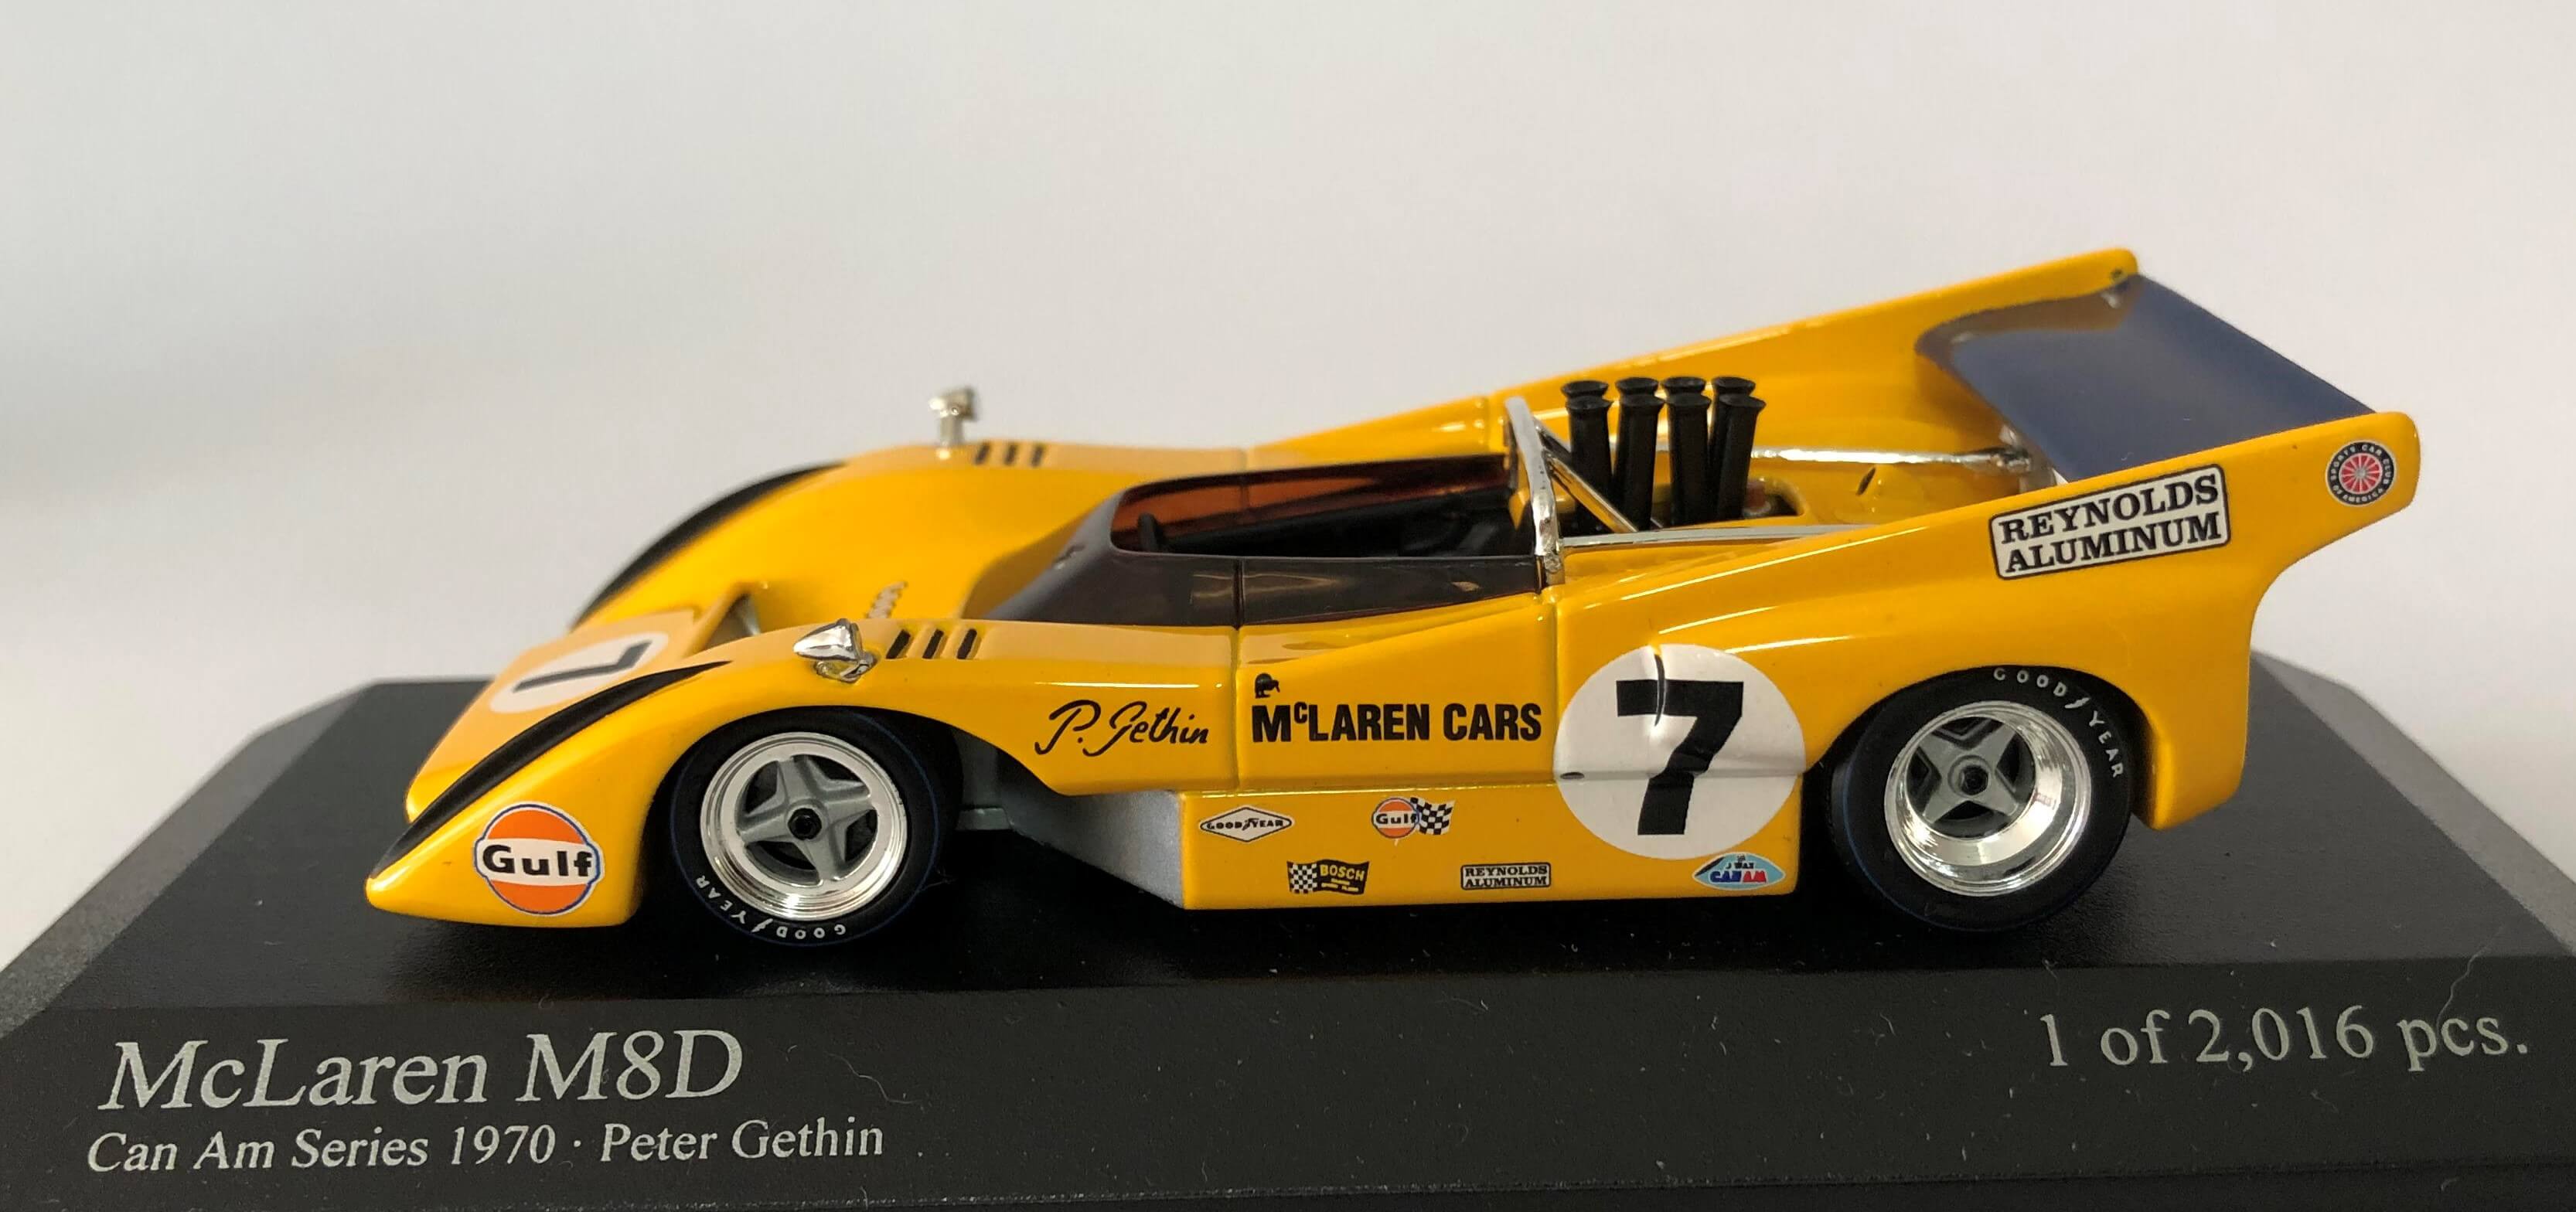 McLaren M8D P. Gethin 1970